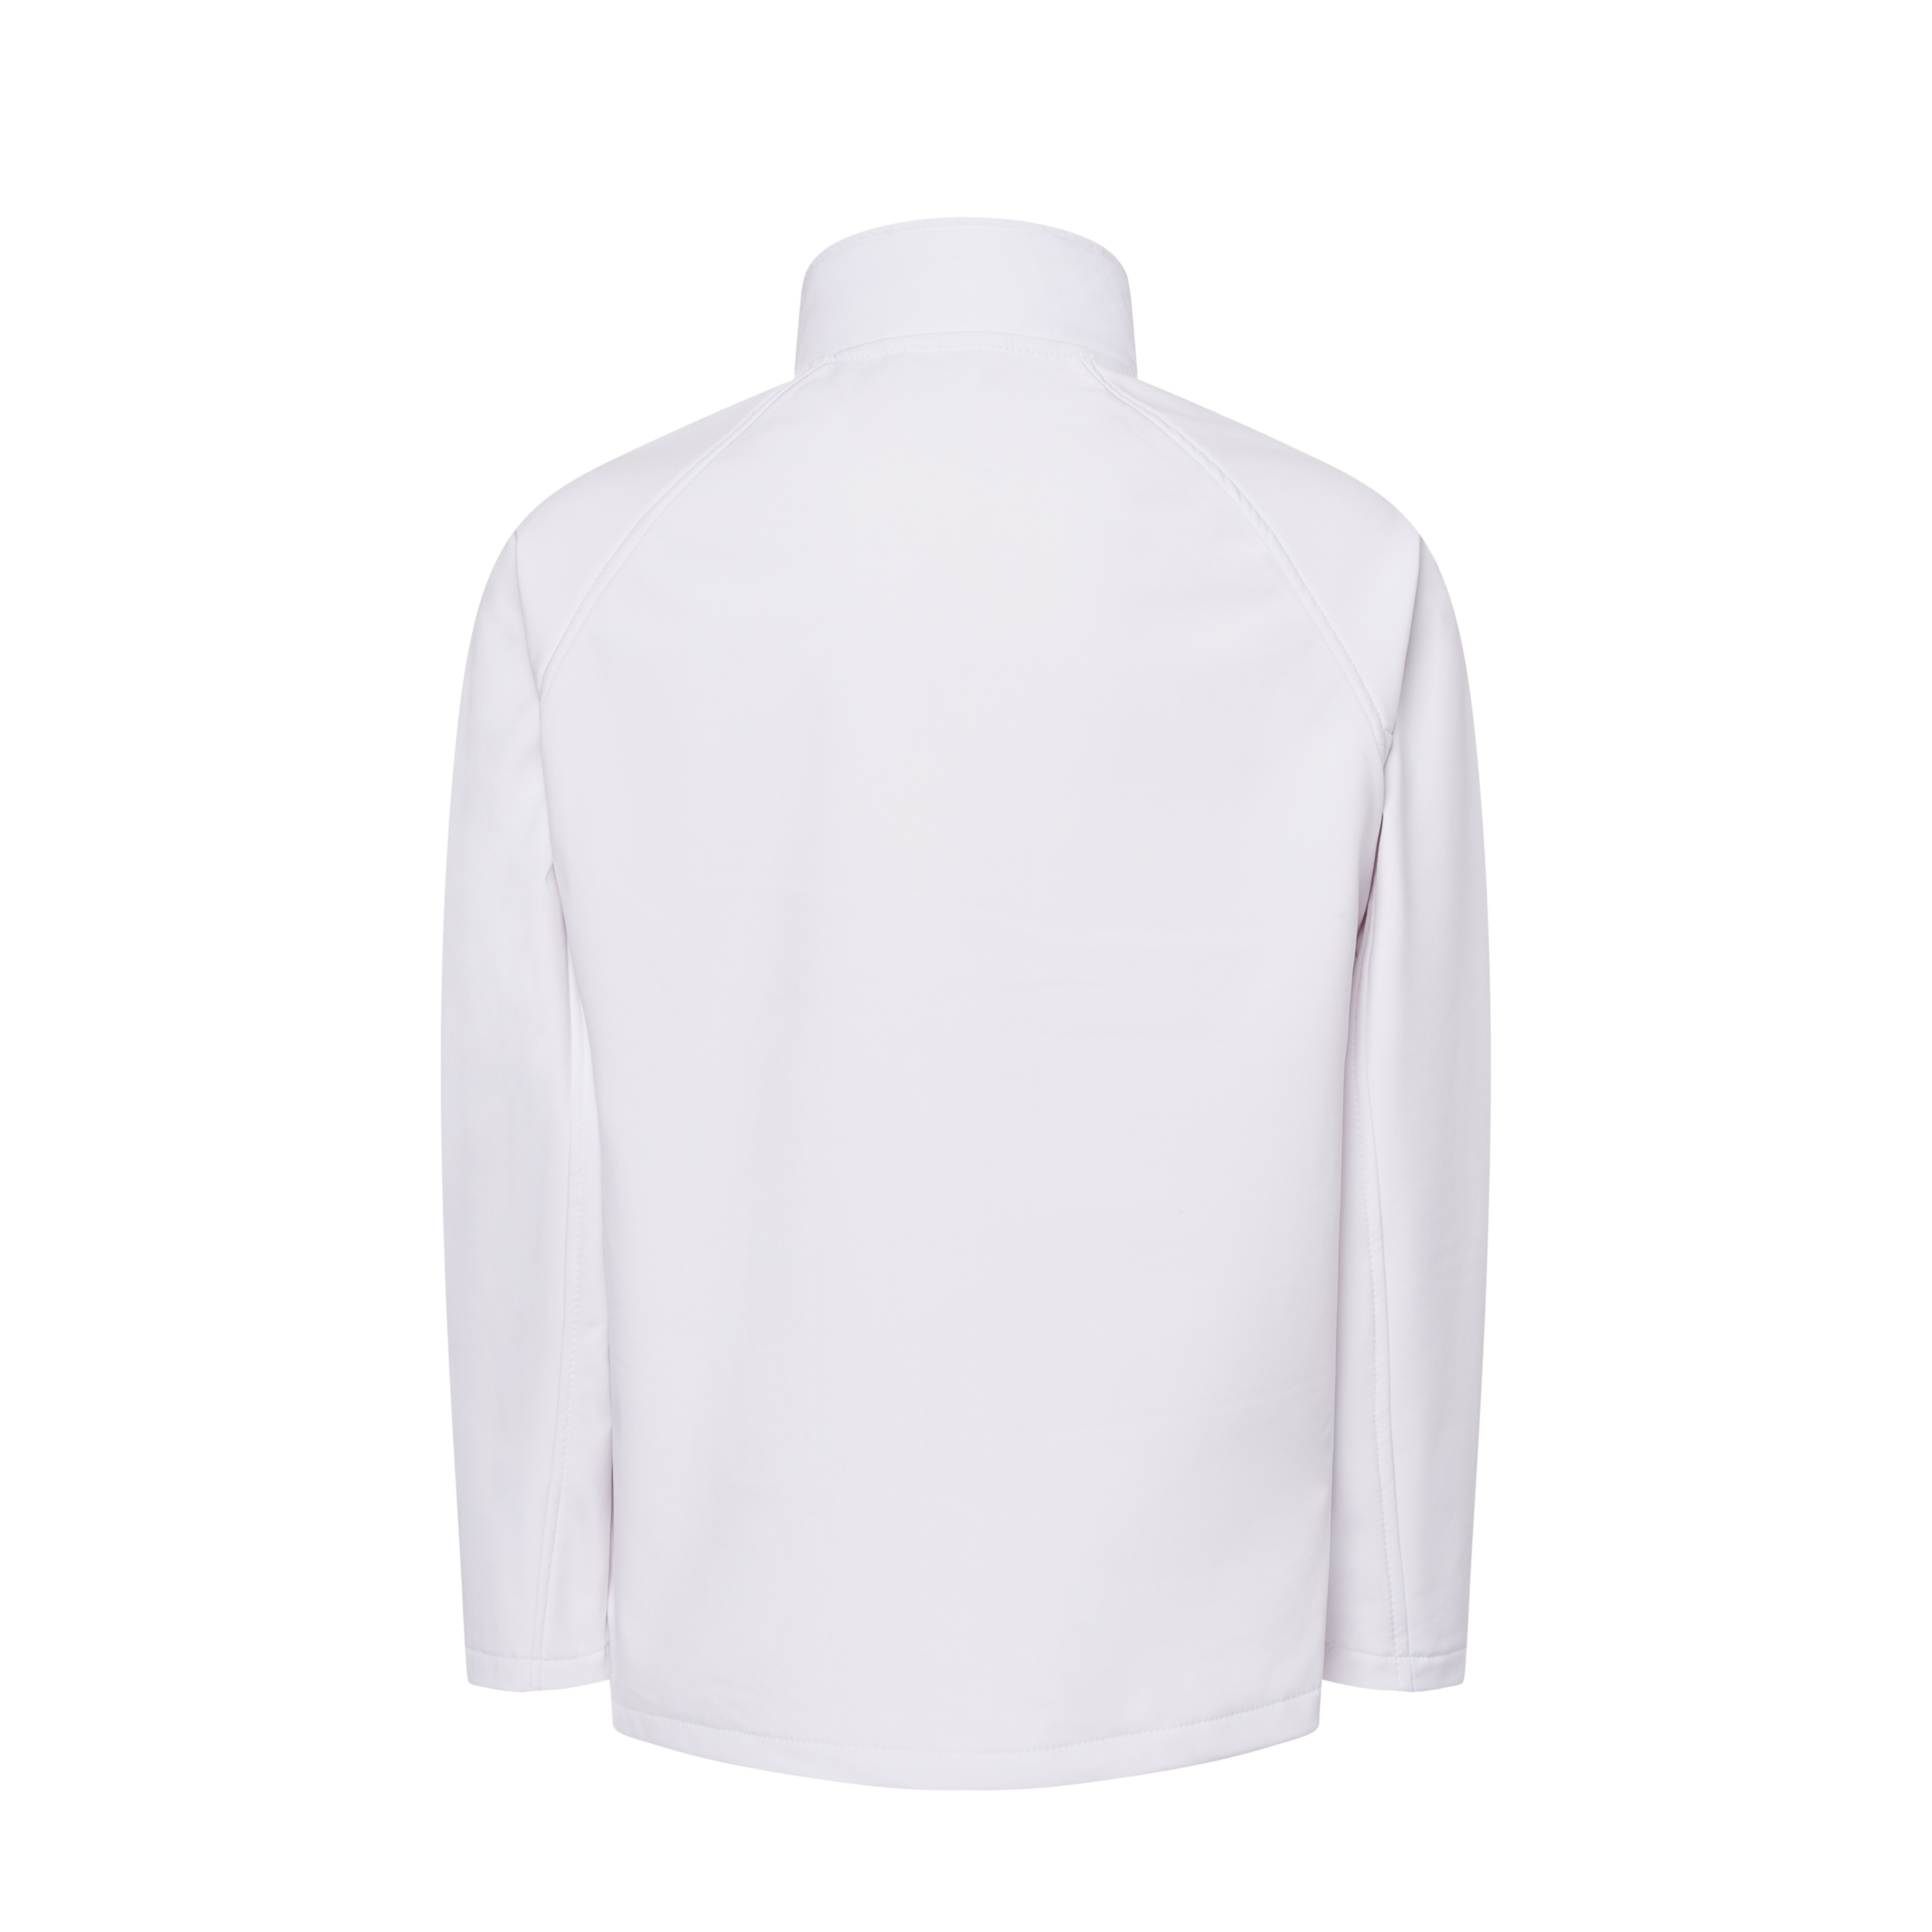 Casaco Softshell Jhk Shirts - Branco | Sport Zone MKP